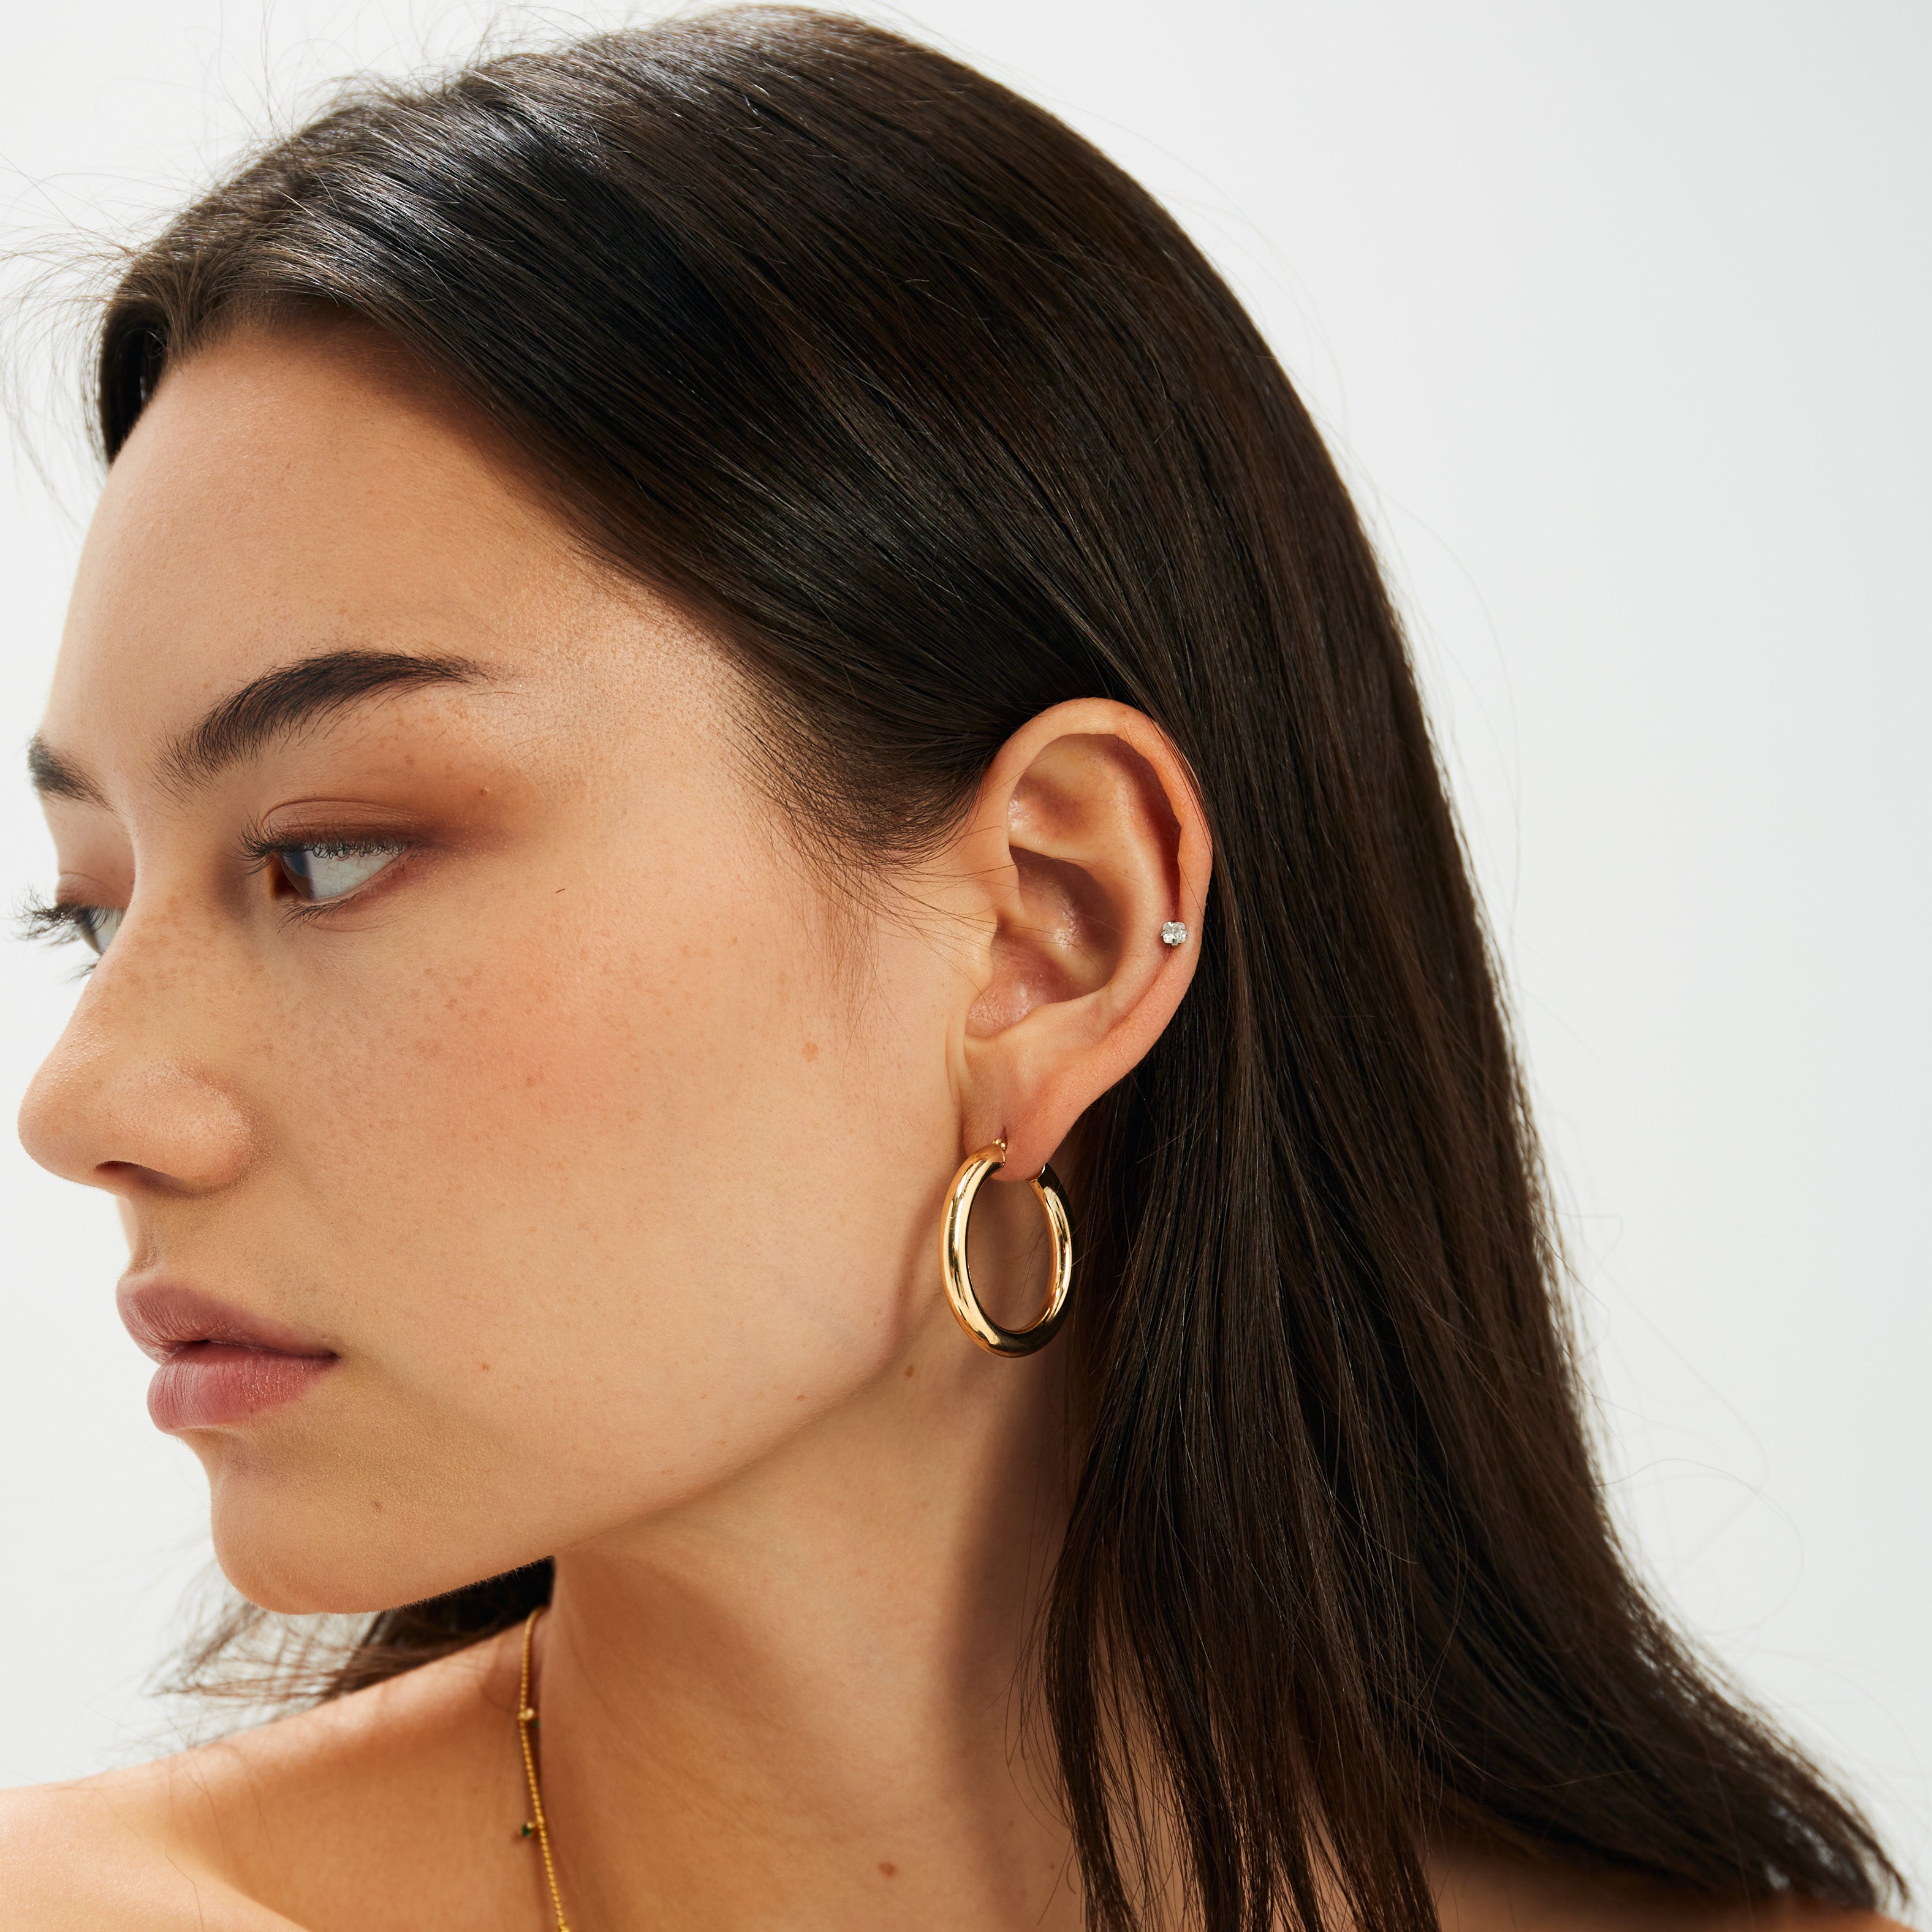 1 Inch Gold Hoop Earrings